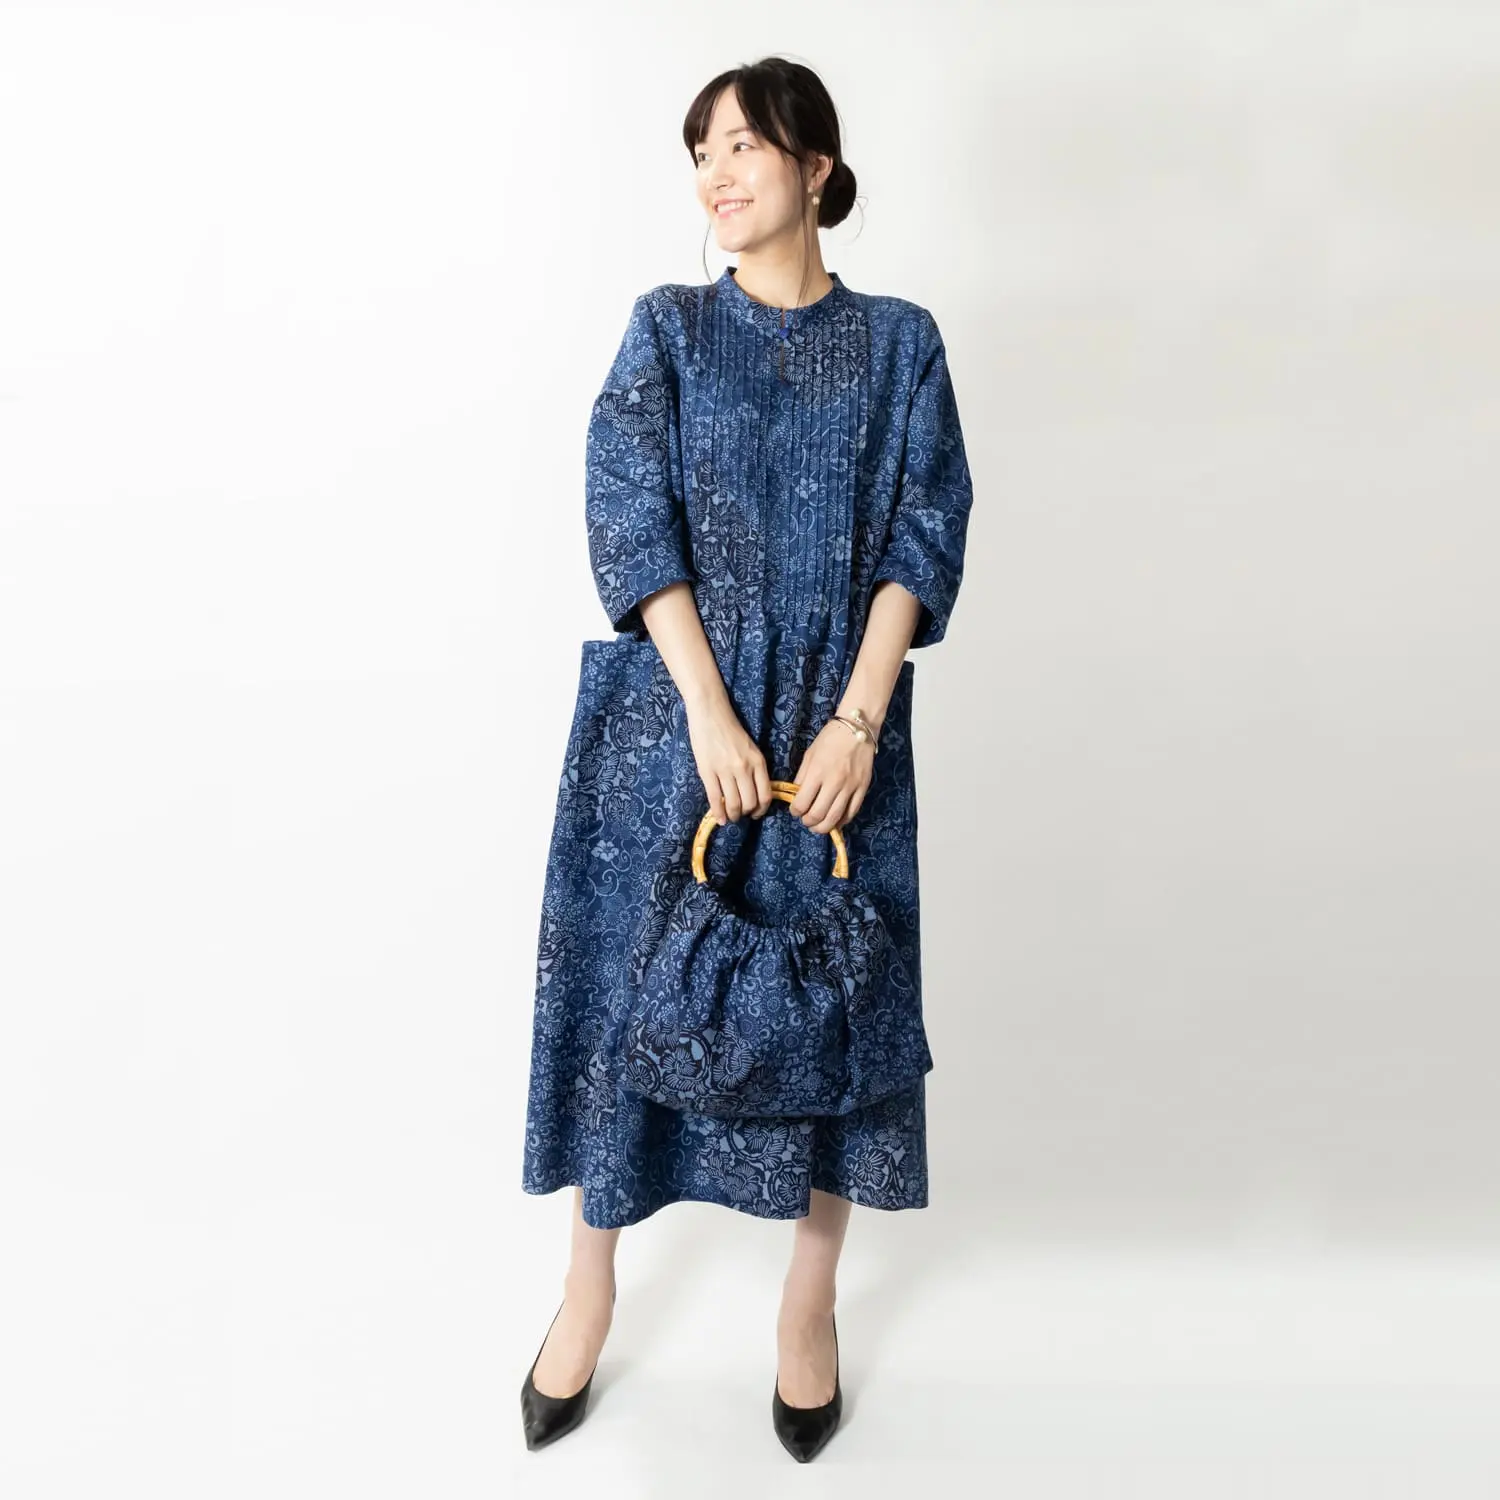 日本独自の着物生地を使用し、ピンタックを多く使用してボリュームを生み出したルーズドレス